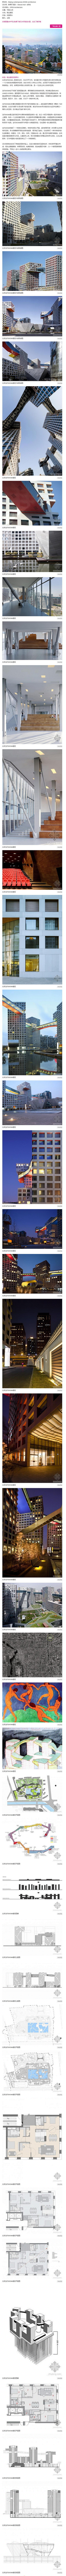 北京当代MOMA建筑.jpg